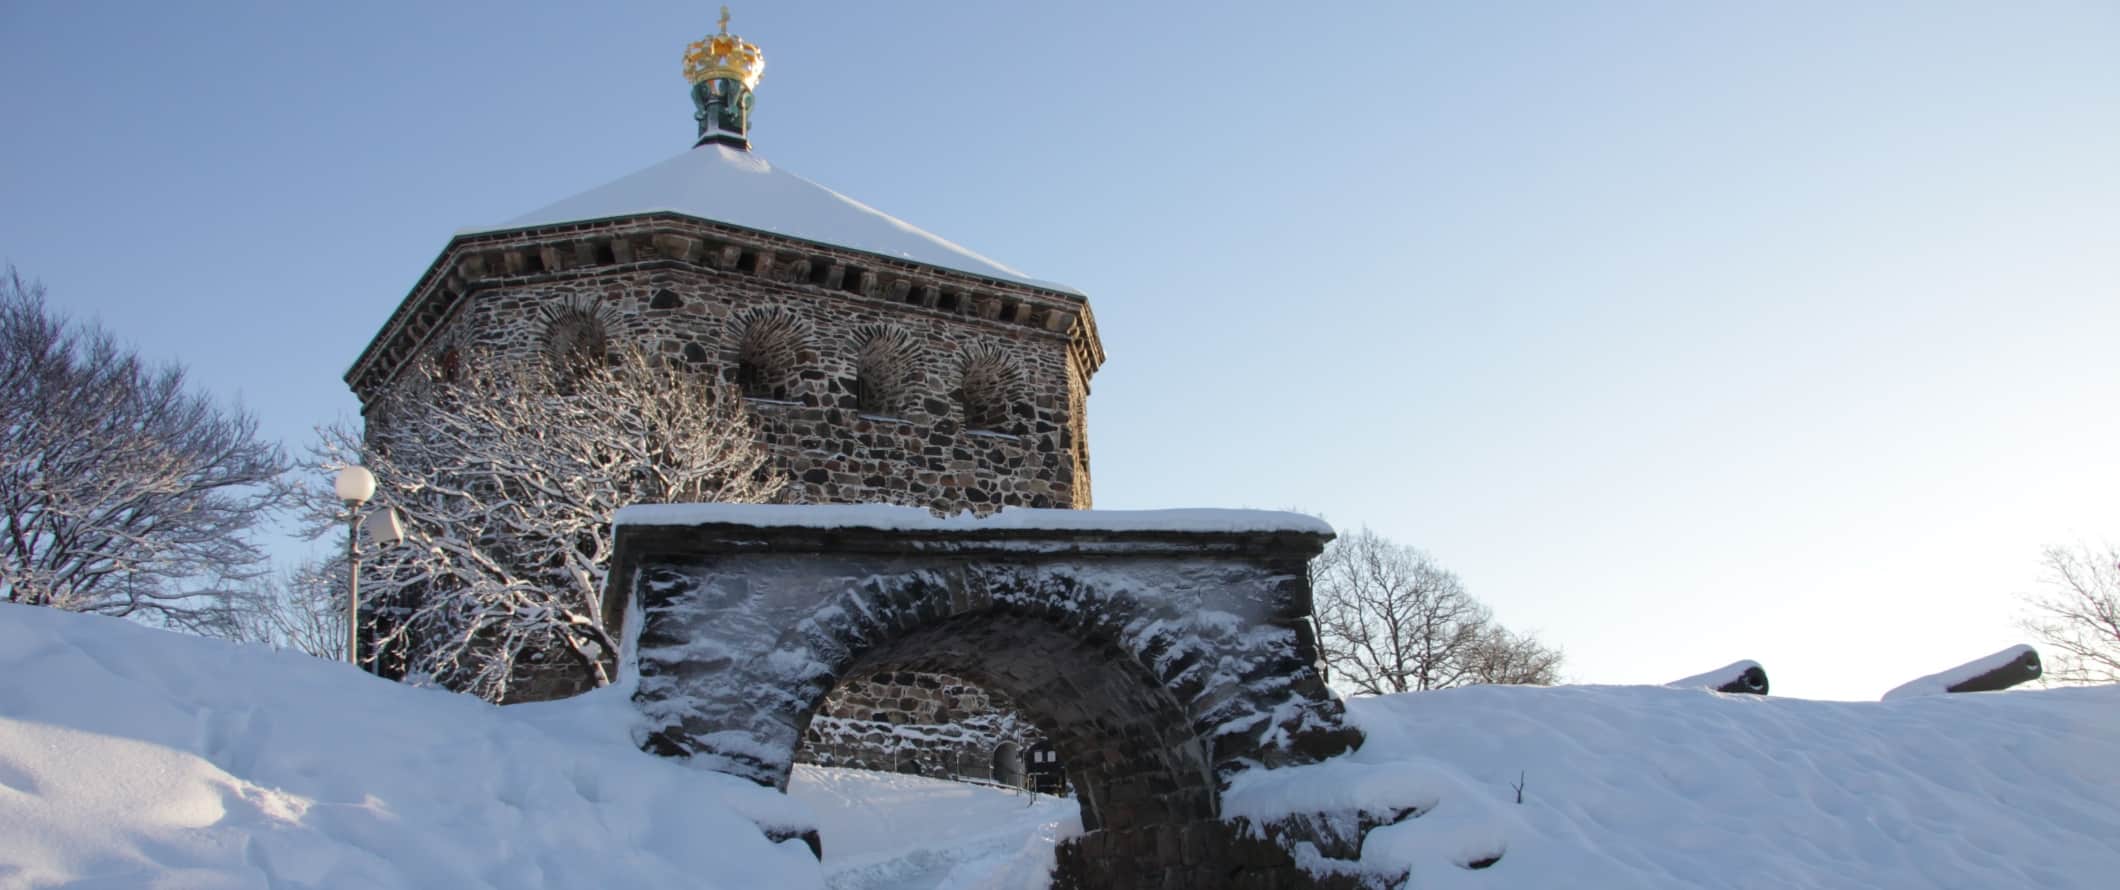 Portão de pedra da fortaleza Skansen Crown, coberta de neve, em Goetric, Suécia